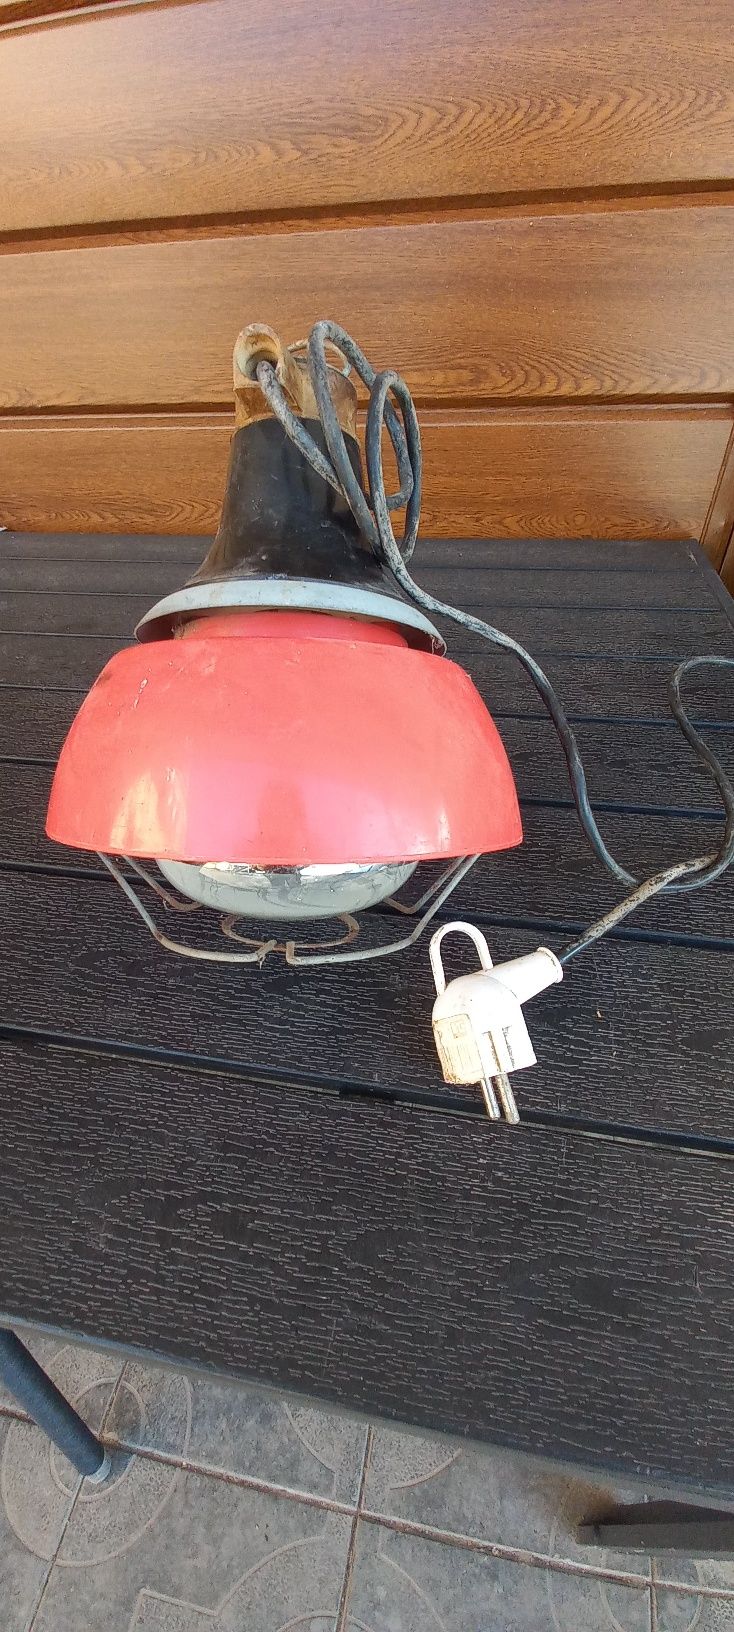 Інфрачервона лампа разом з плафоном для обігріву  тварин.